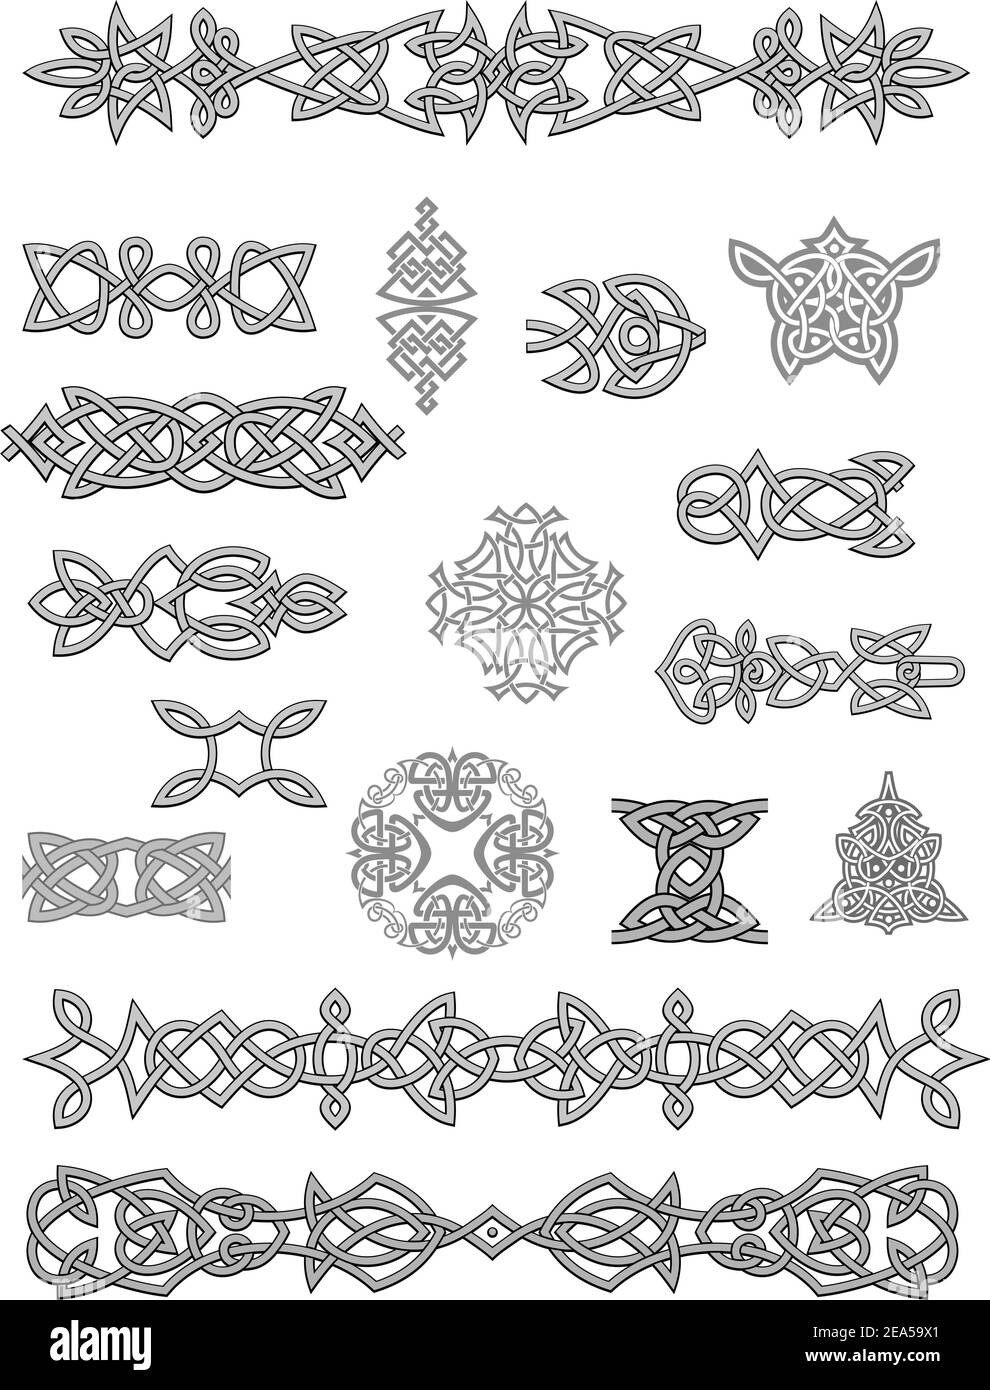 Keltische Ornamente und Verzierungen für Design und Dekoration Stock Vektor